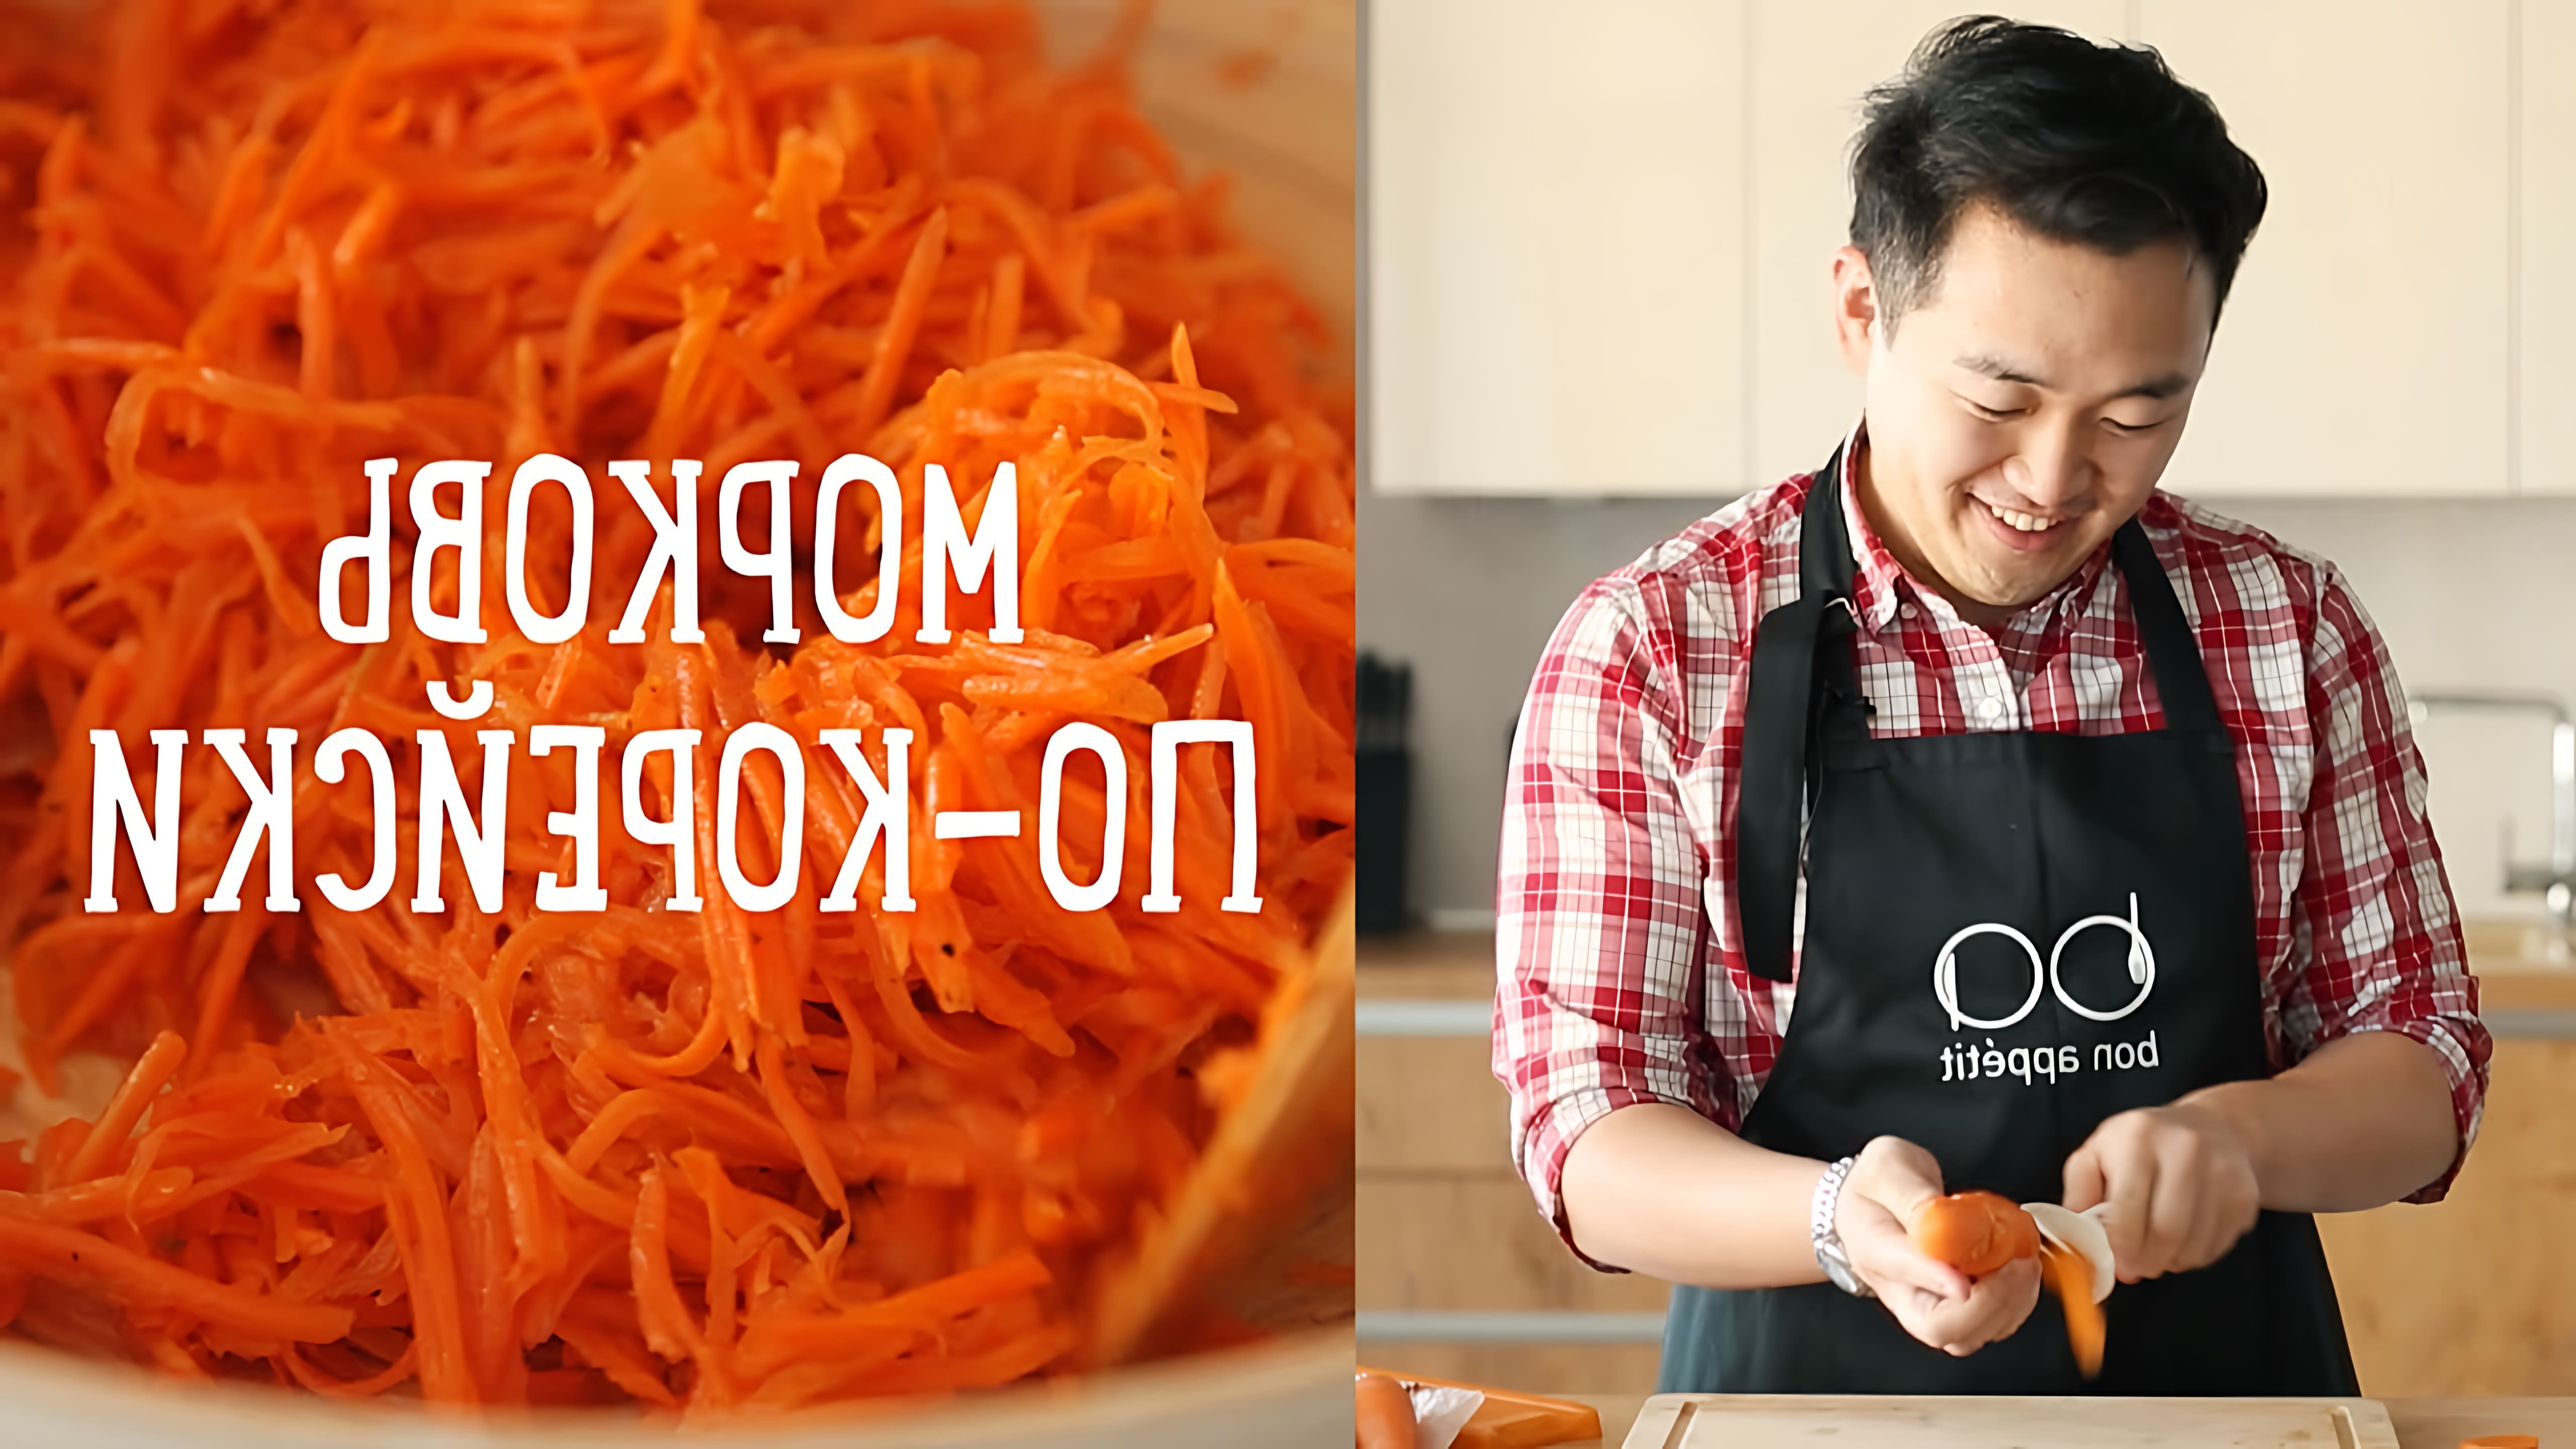 Видео рецепт корейских морковей, известных как "морковь по-корейски" на русском языке